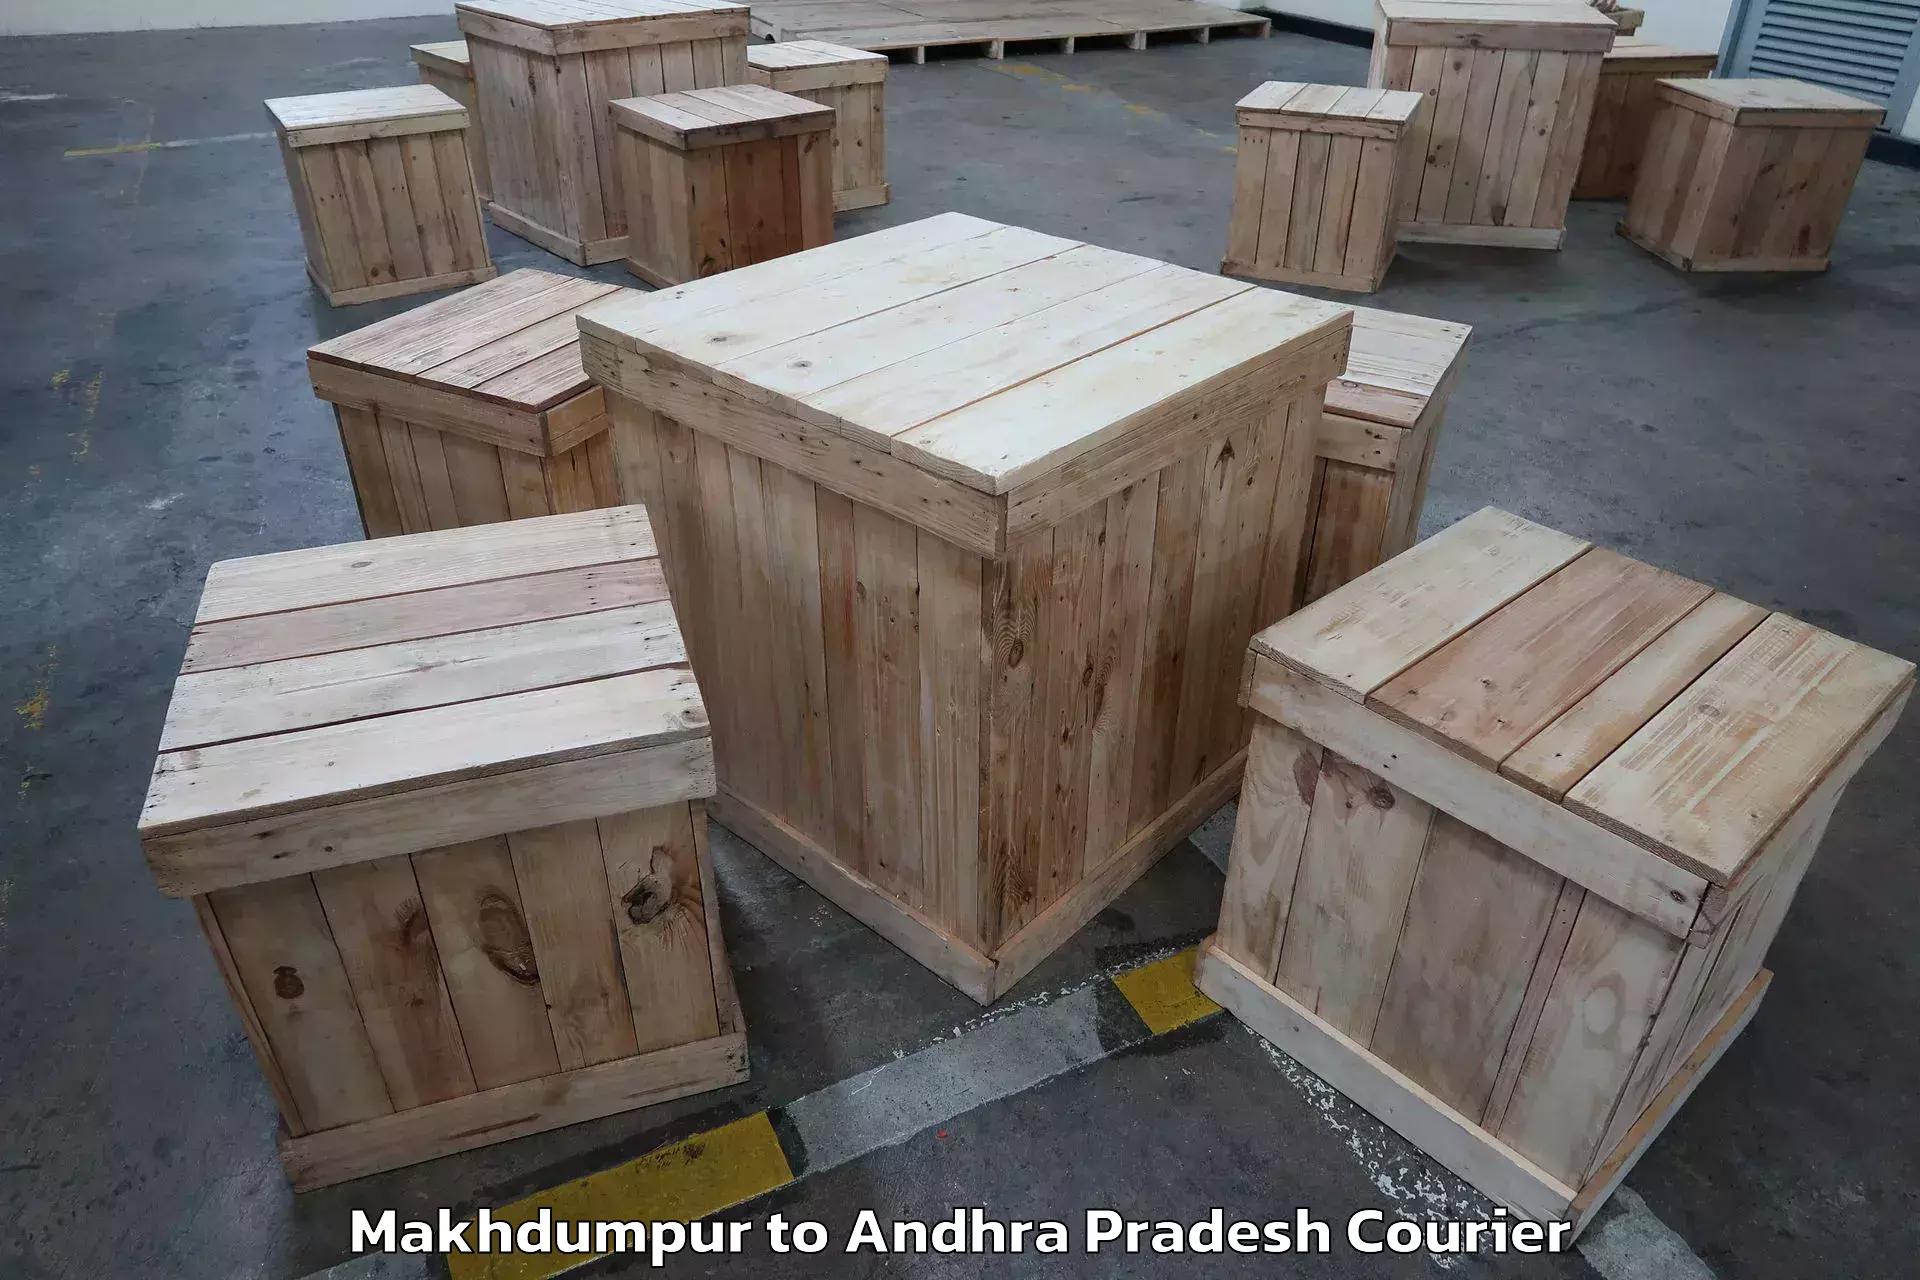 Furniture transport professionals Makhdumpur to Ganapavaram